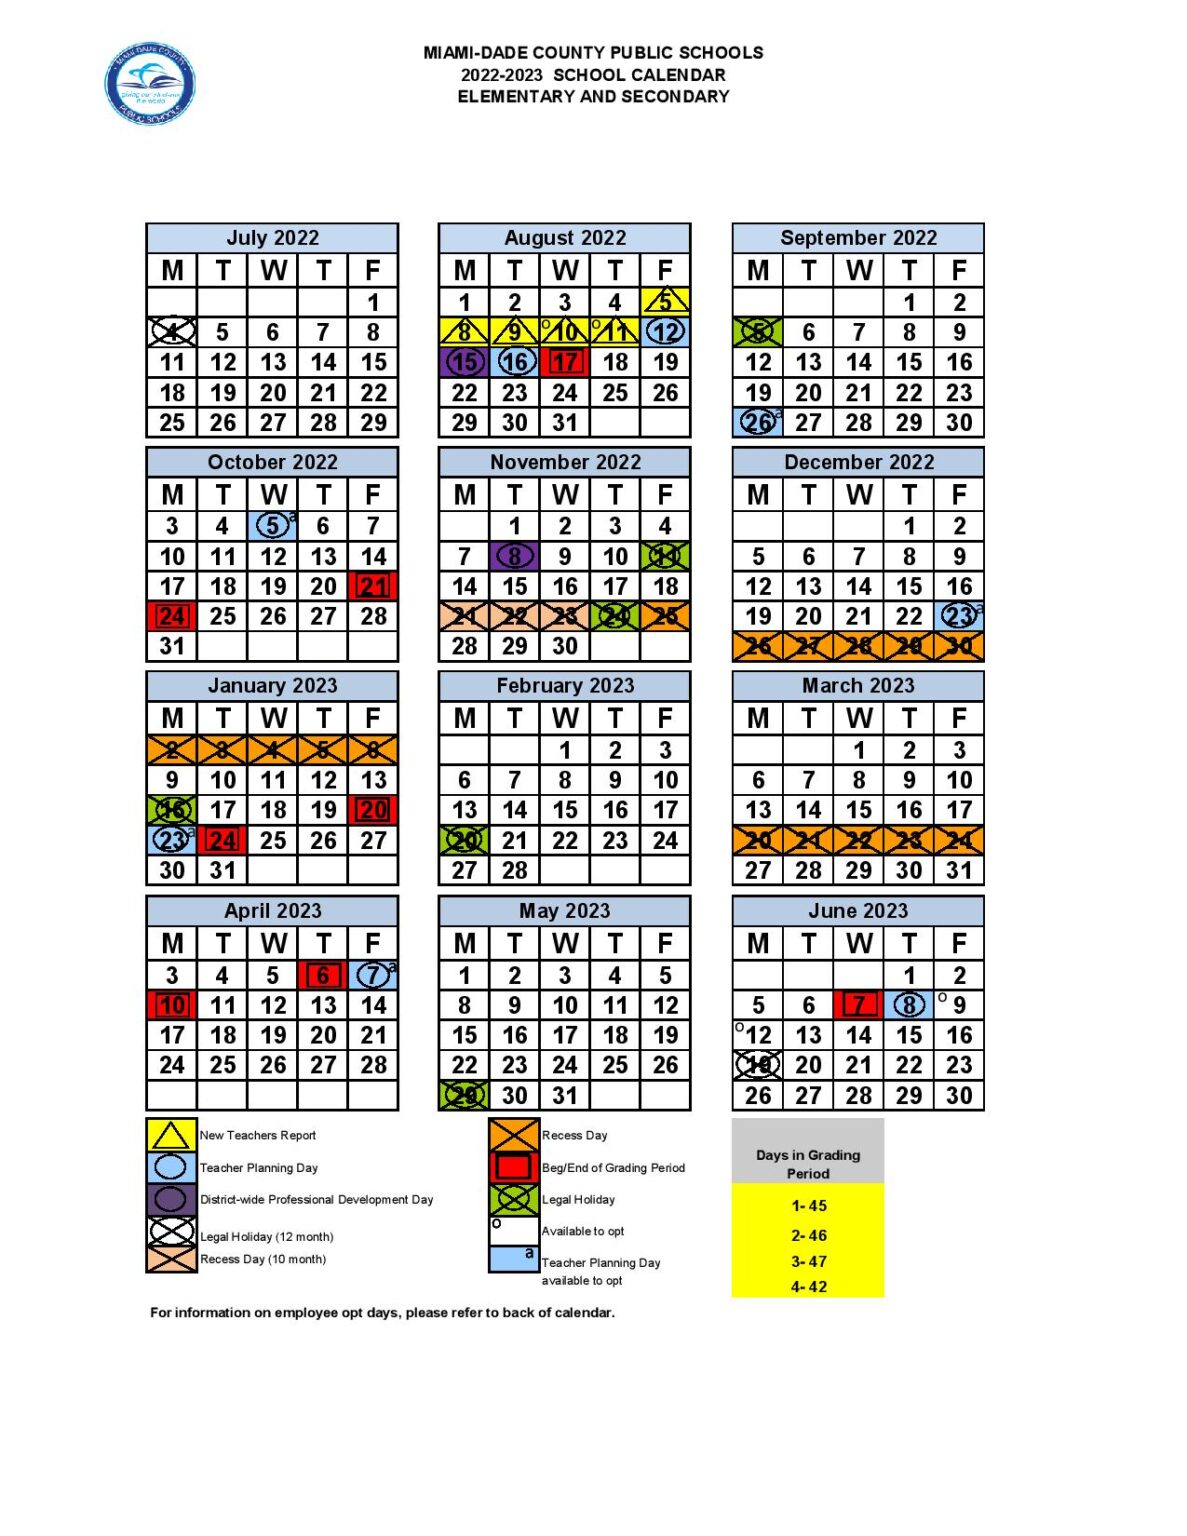 Miami Dade County Public Schools Calendar Holidays 2022 2023 School 